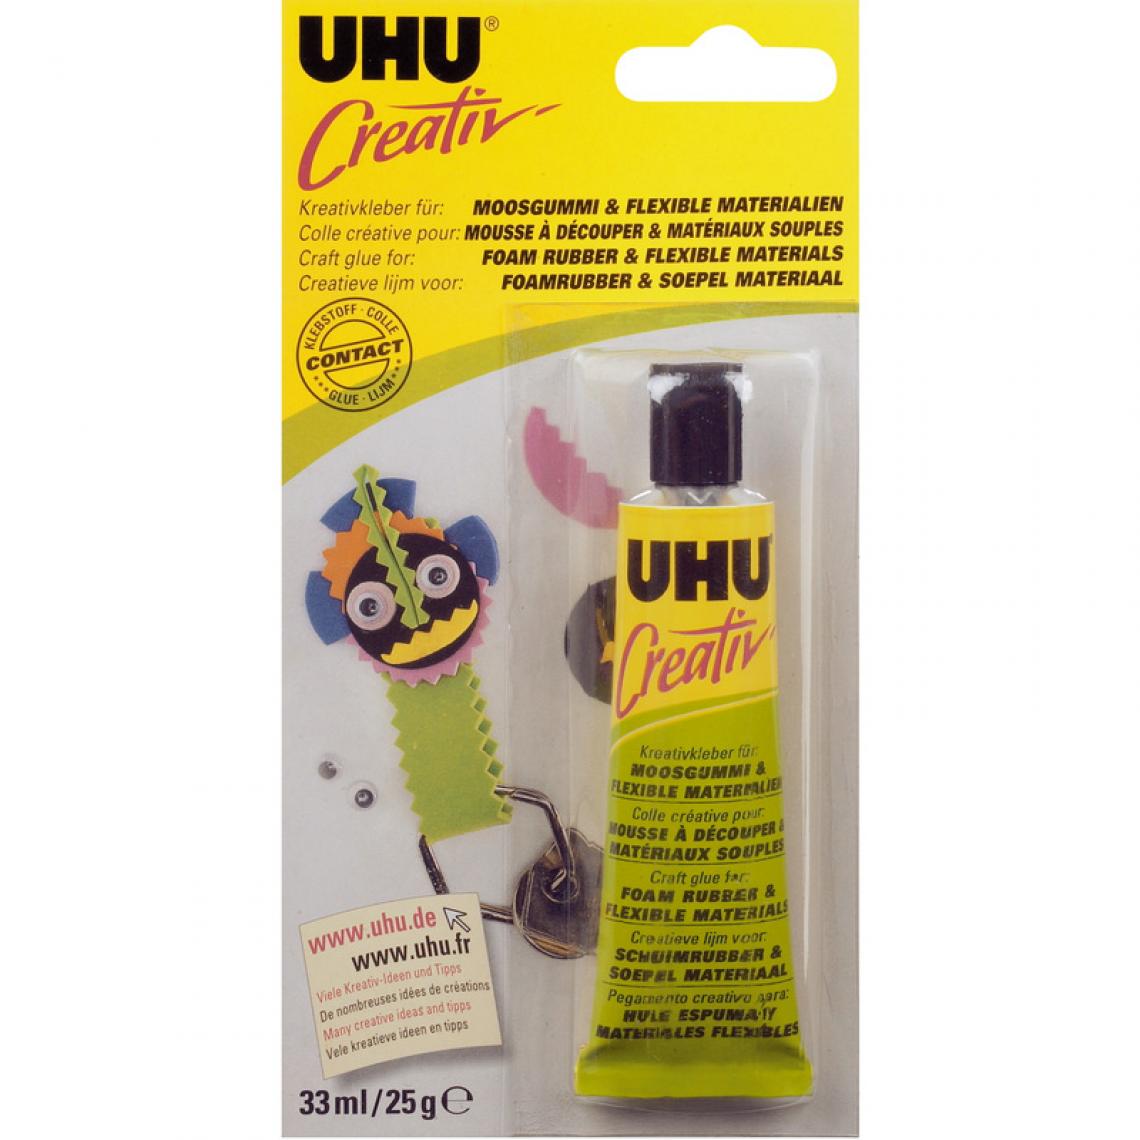 Uhu - UHU Colle spéciale 'Creativ' pr mousse à découper, tube 33ml () - Colles et pistolets à colle